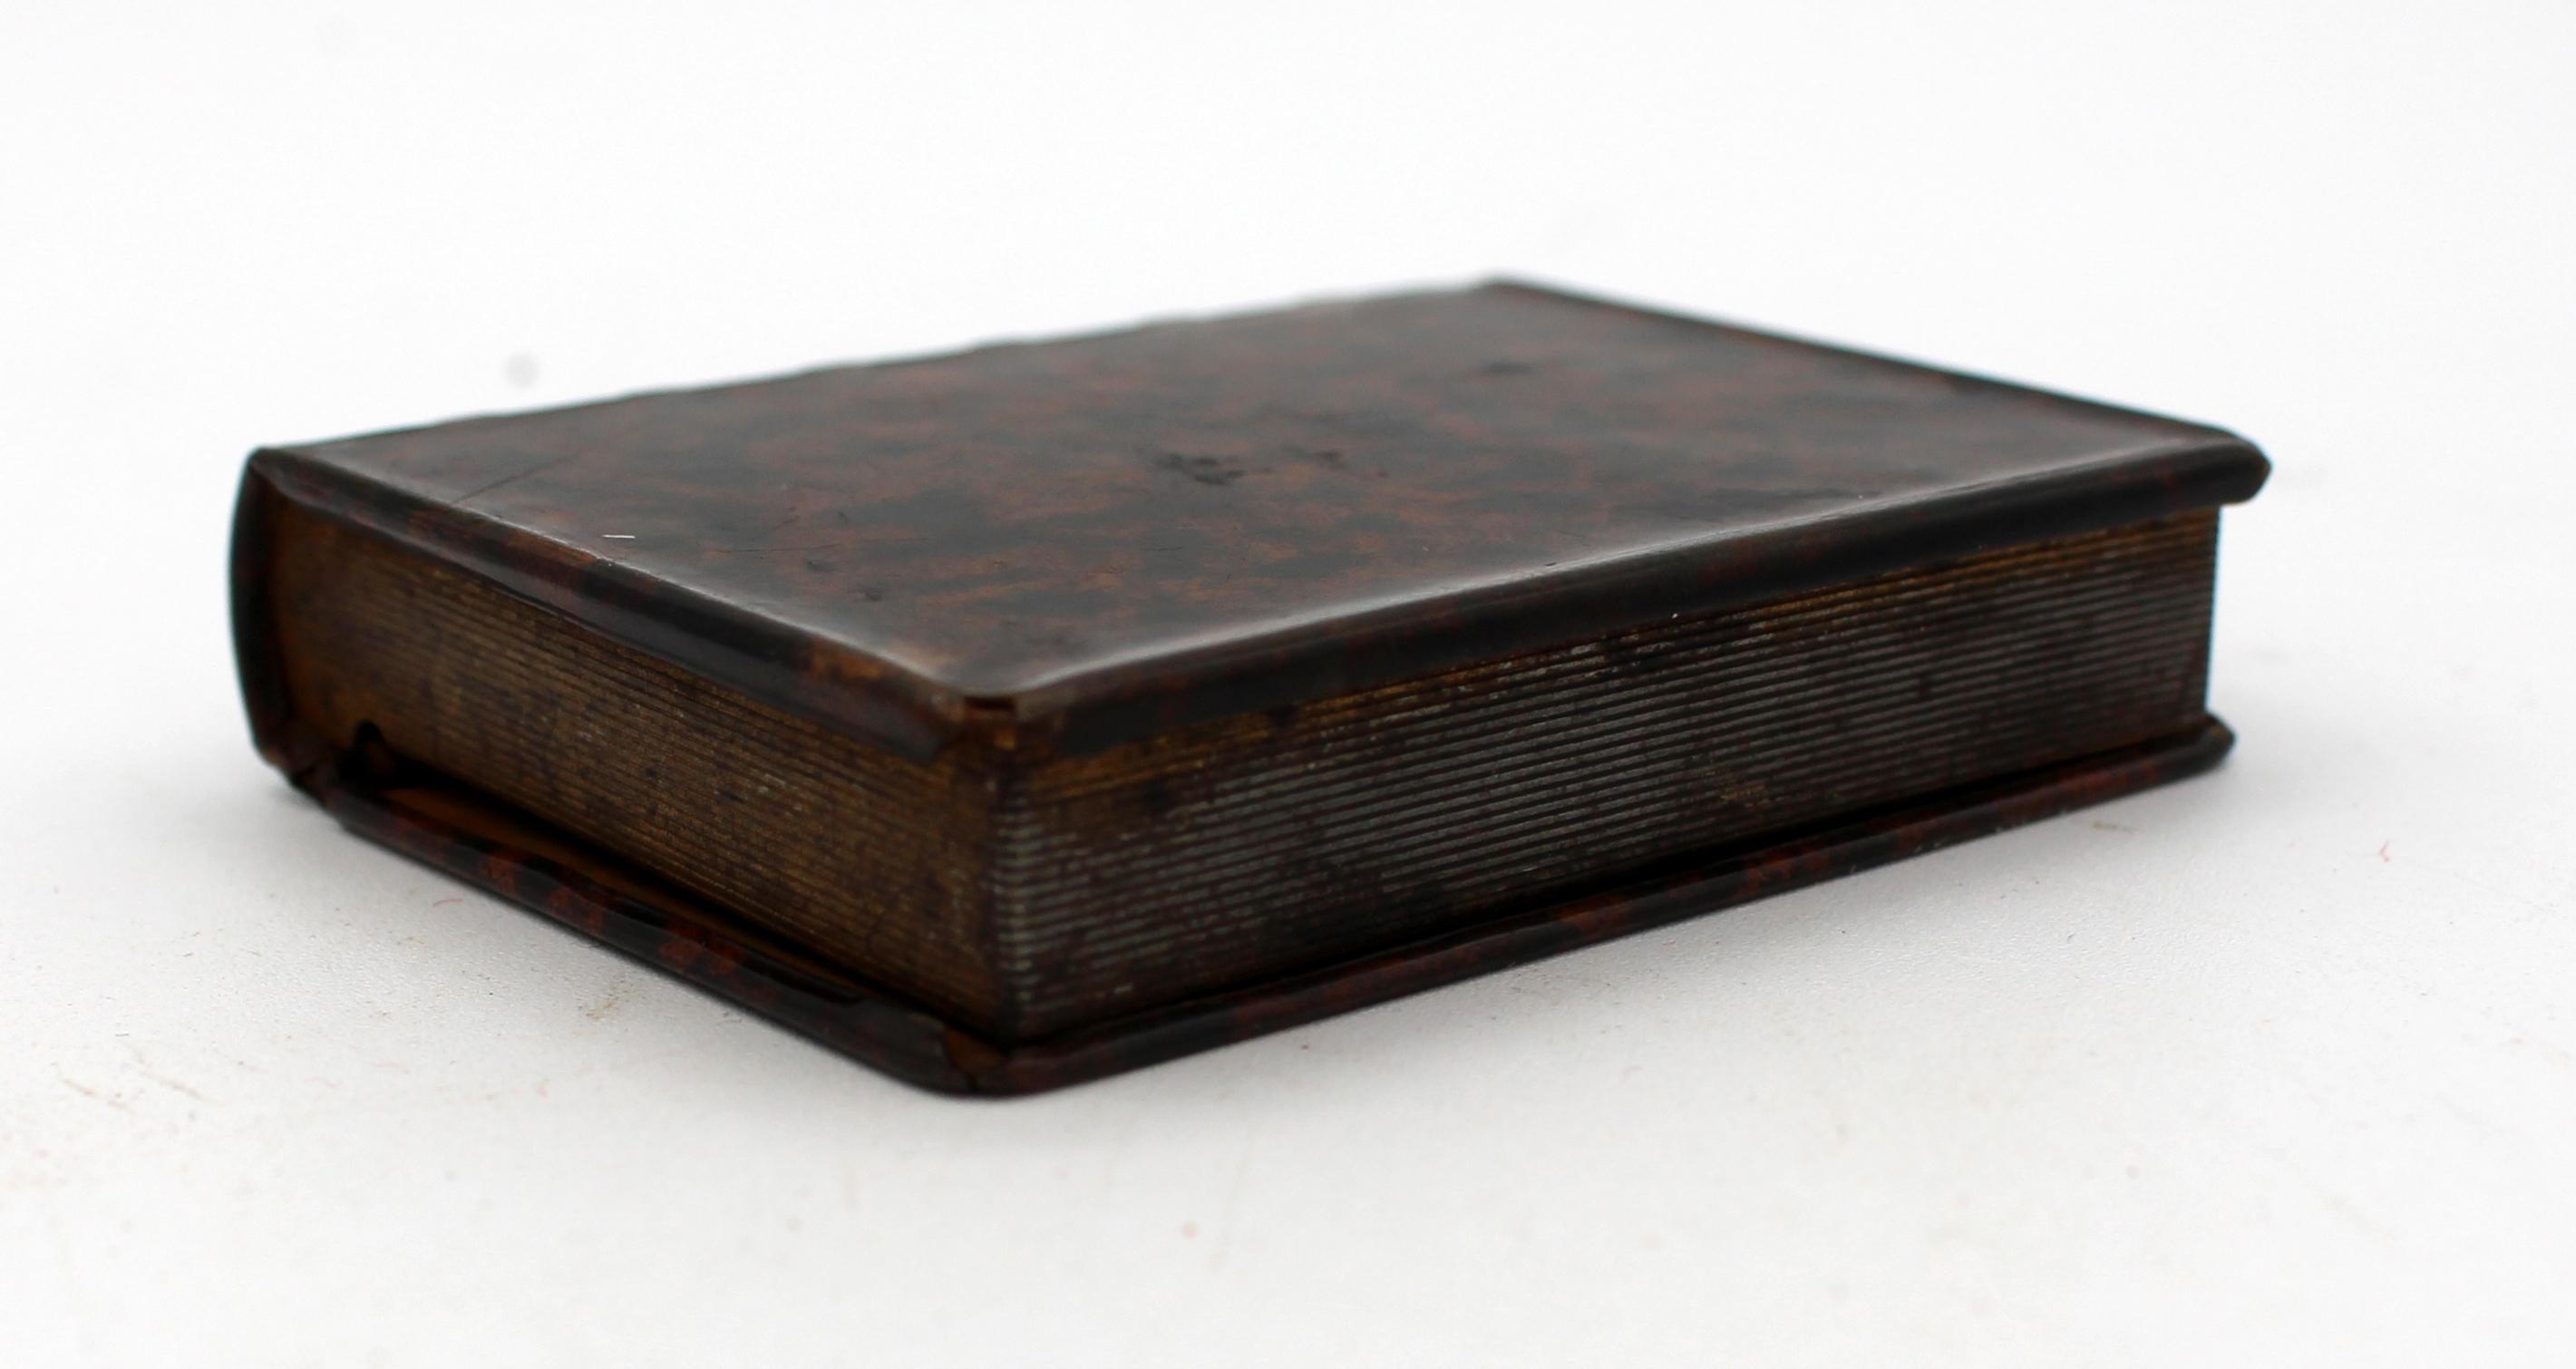 Kleine Faux-Buch-Box von gut gemalt tole wie das Leder mit dem Werkzeug Arbeit eines feinen Buches mit Goldschnitt aussehen. Englisch, Ende 19. Jahrhundert.
Maße: 3 1/4